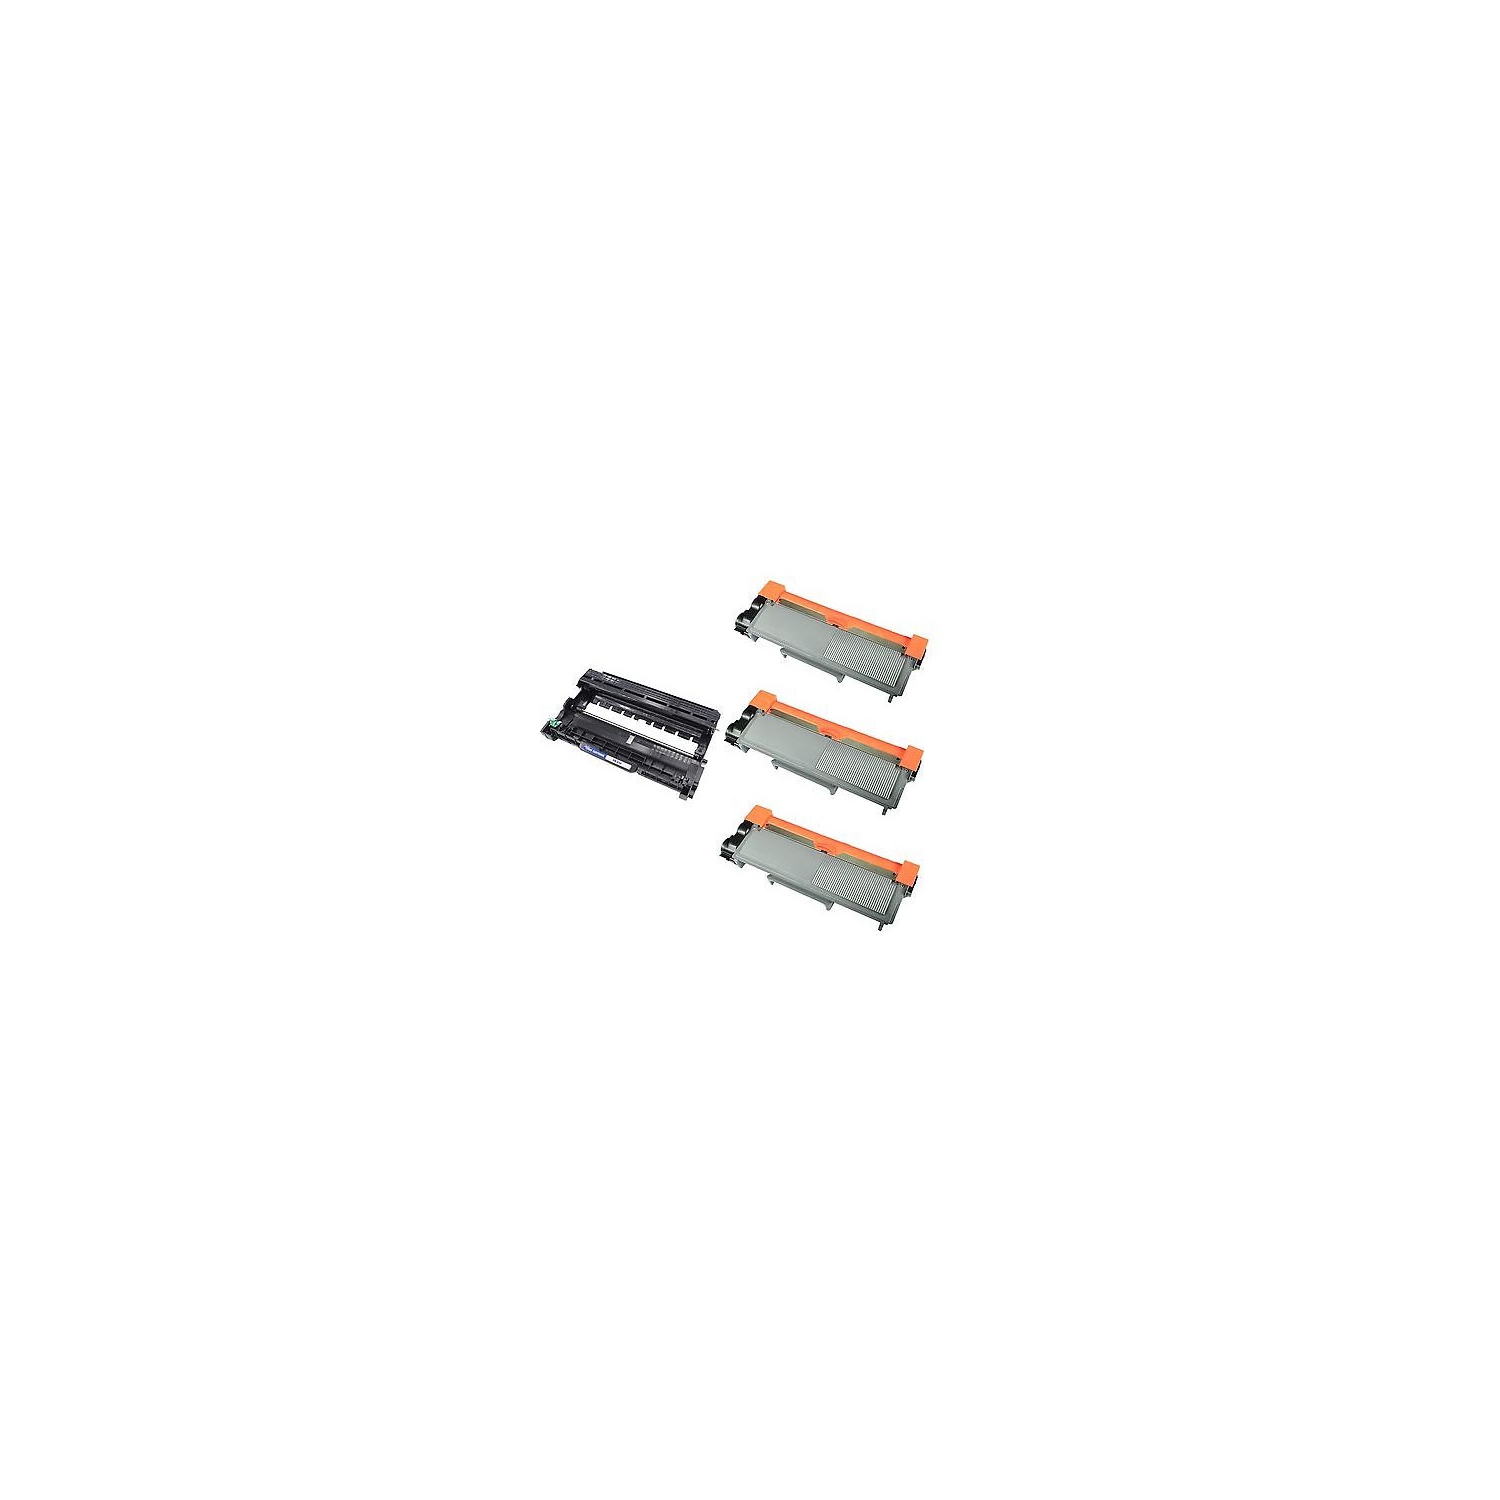 Max Saving - 4PK (3xTN660+DR630) (3XToner Cartridges + 1 Drum Unit) Compatible for Brother TN-660 DR-630 Printer DCP-L2520DW,DCP-L2540DW,HL-L2300D HL-L2305W